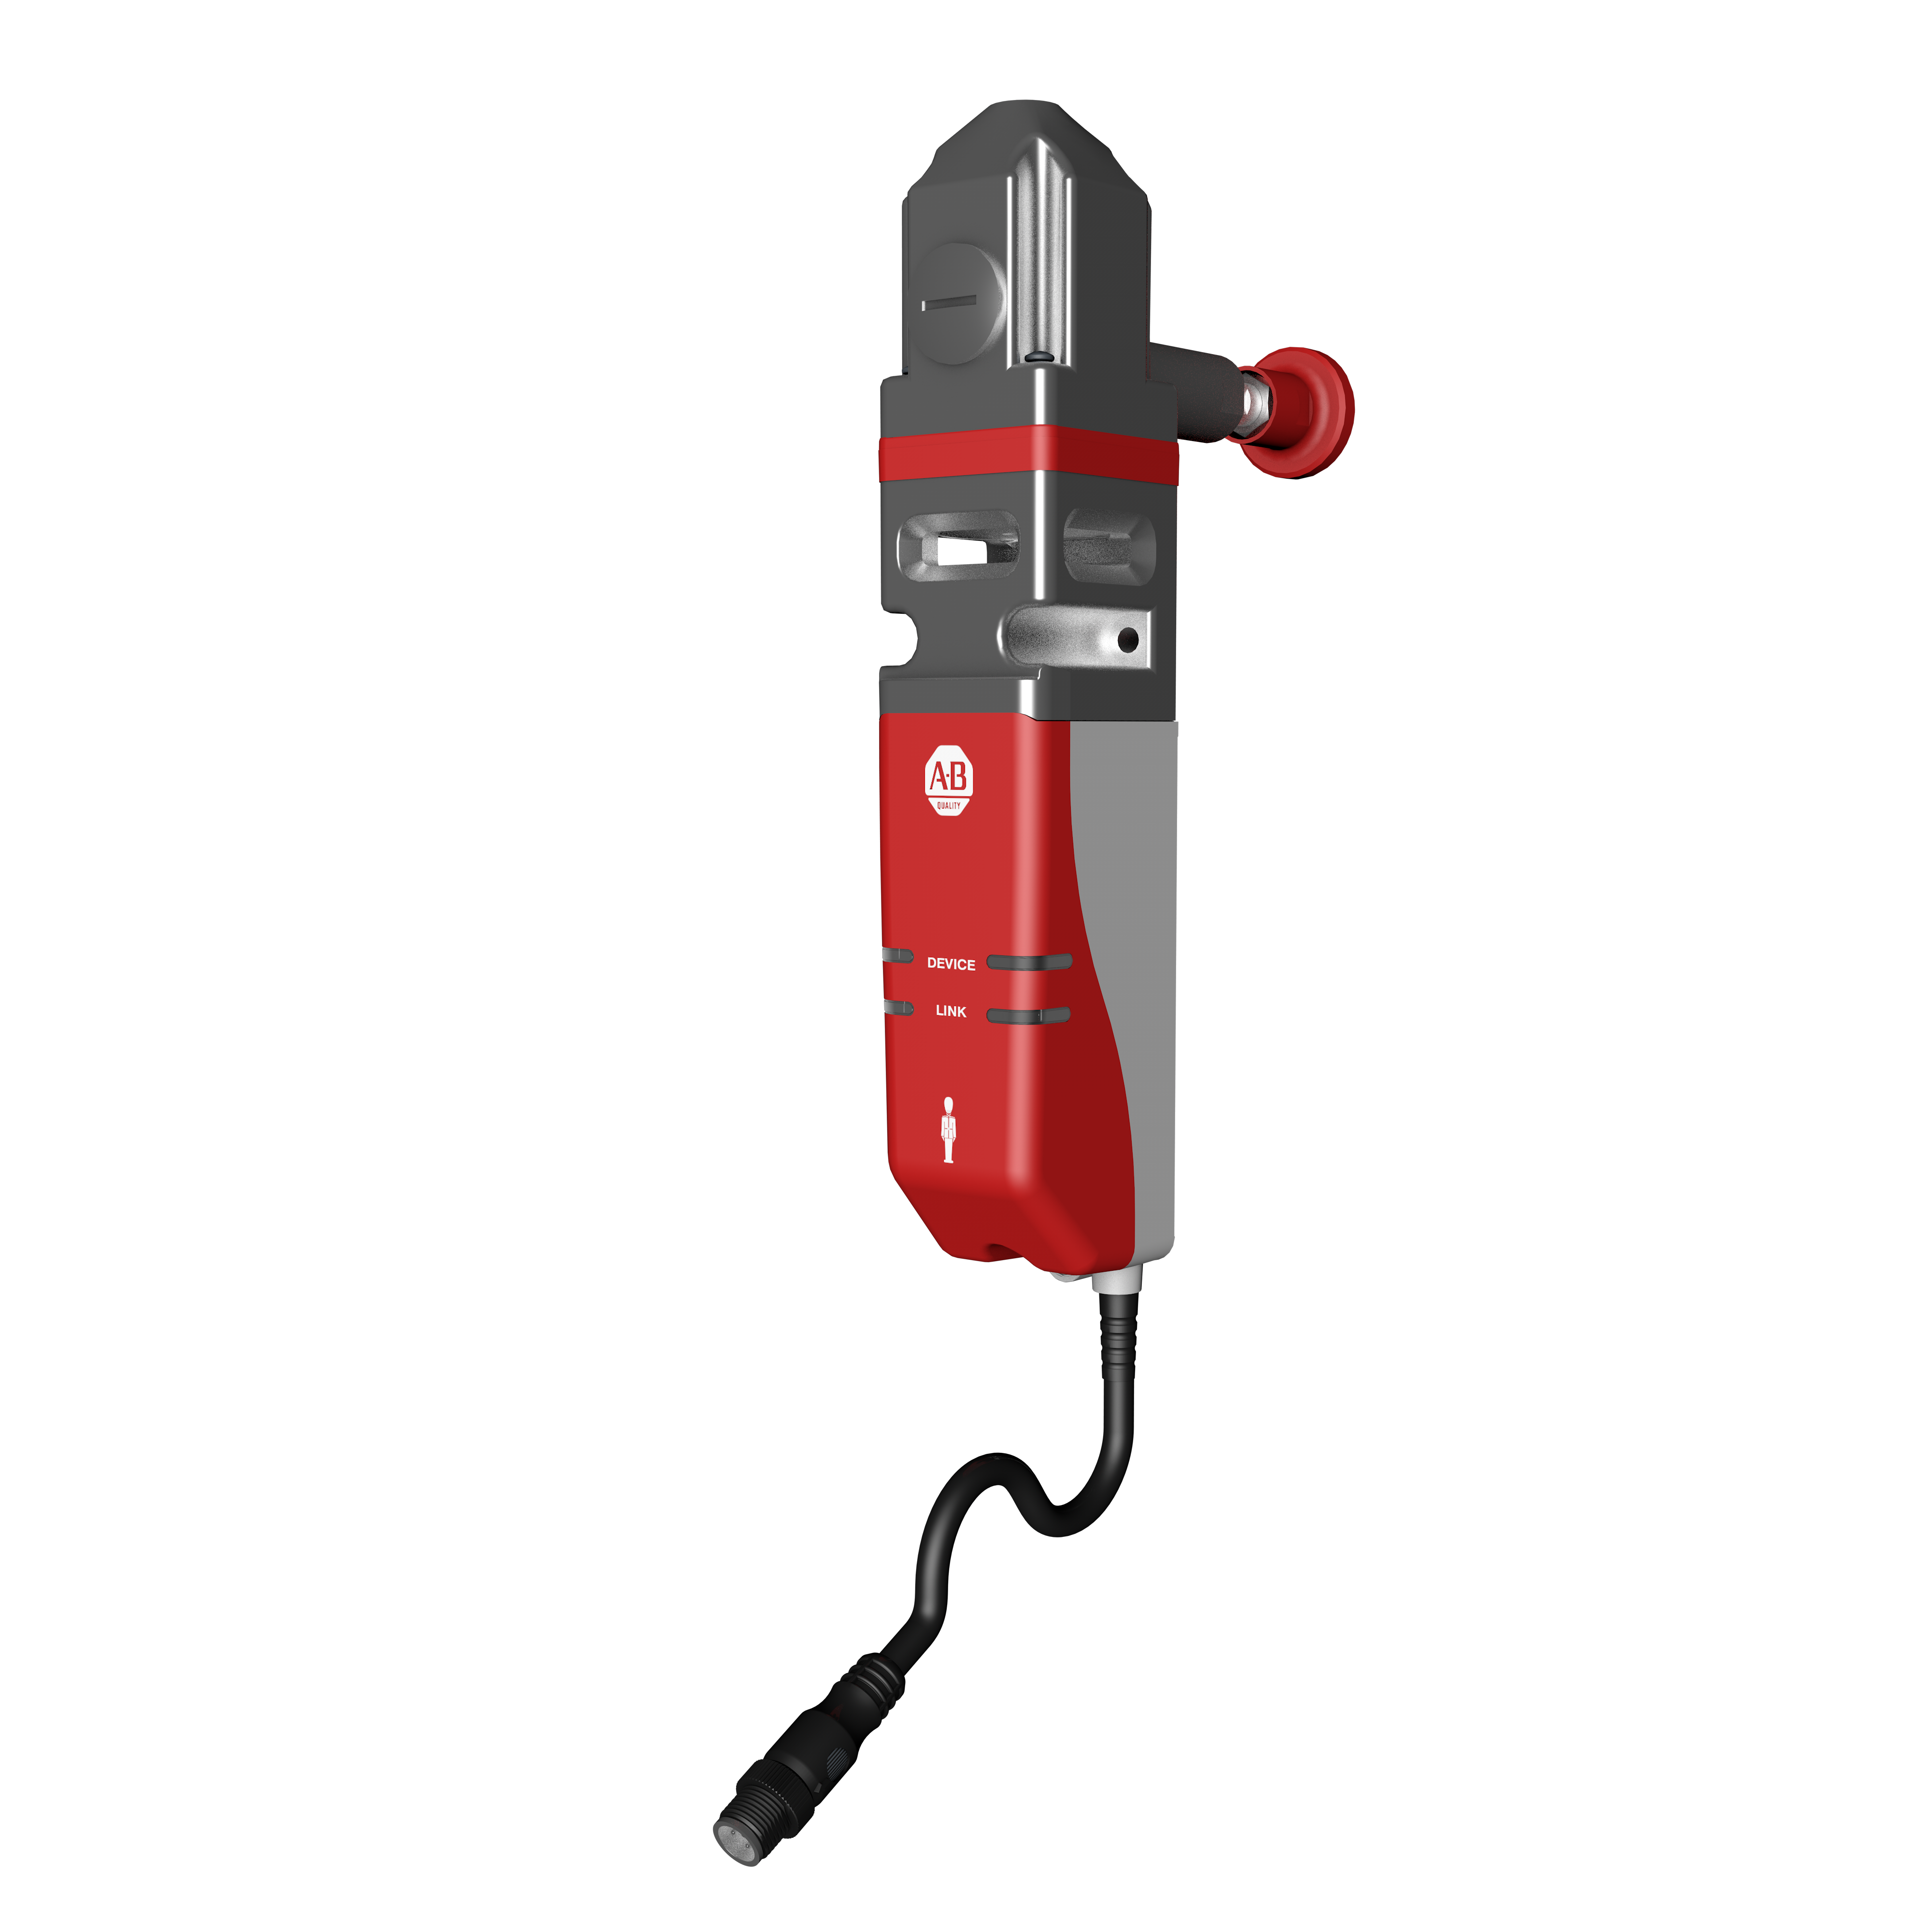 Gâche de sécurité 440G-MZ avec boîtier de protection en plastique rouge et gris en dessous d’un cube en aluminium, avec un bouton de déverrouillage d'évacuation à l’arrière et un câble partant d’en bas. Un marquage Allen-Bradley et des voyants DEL se trouvent à l’avant du boîtier rouge